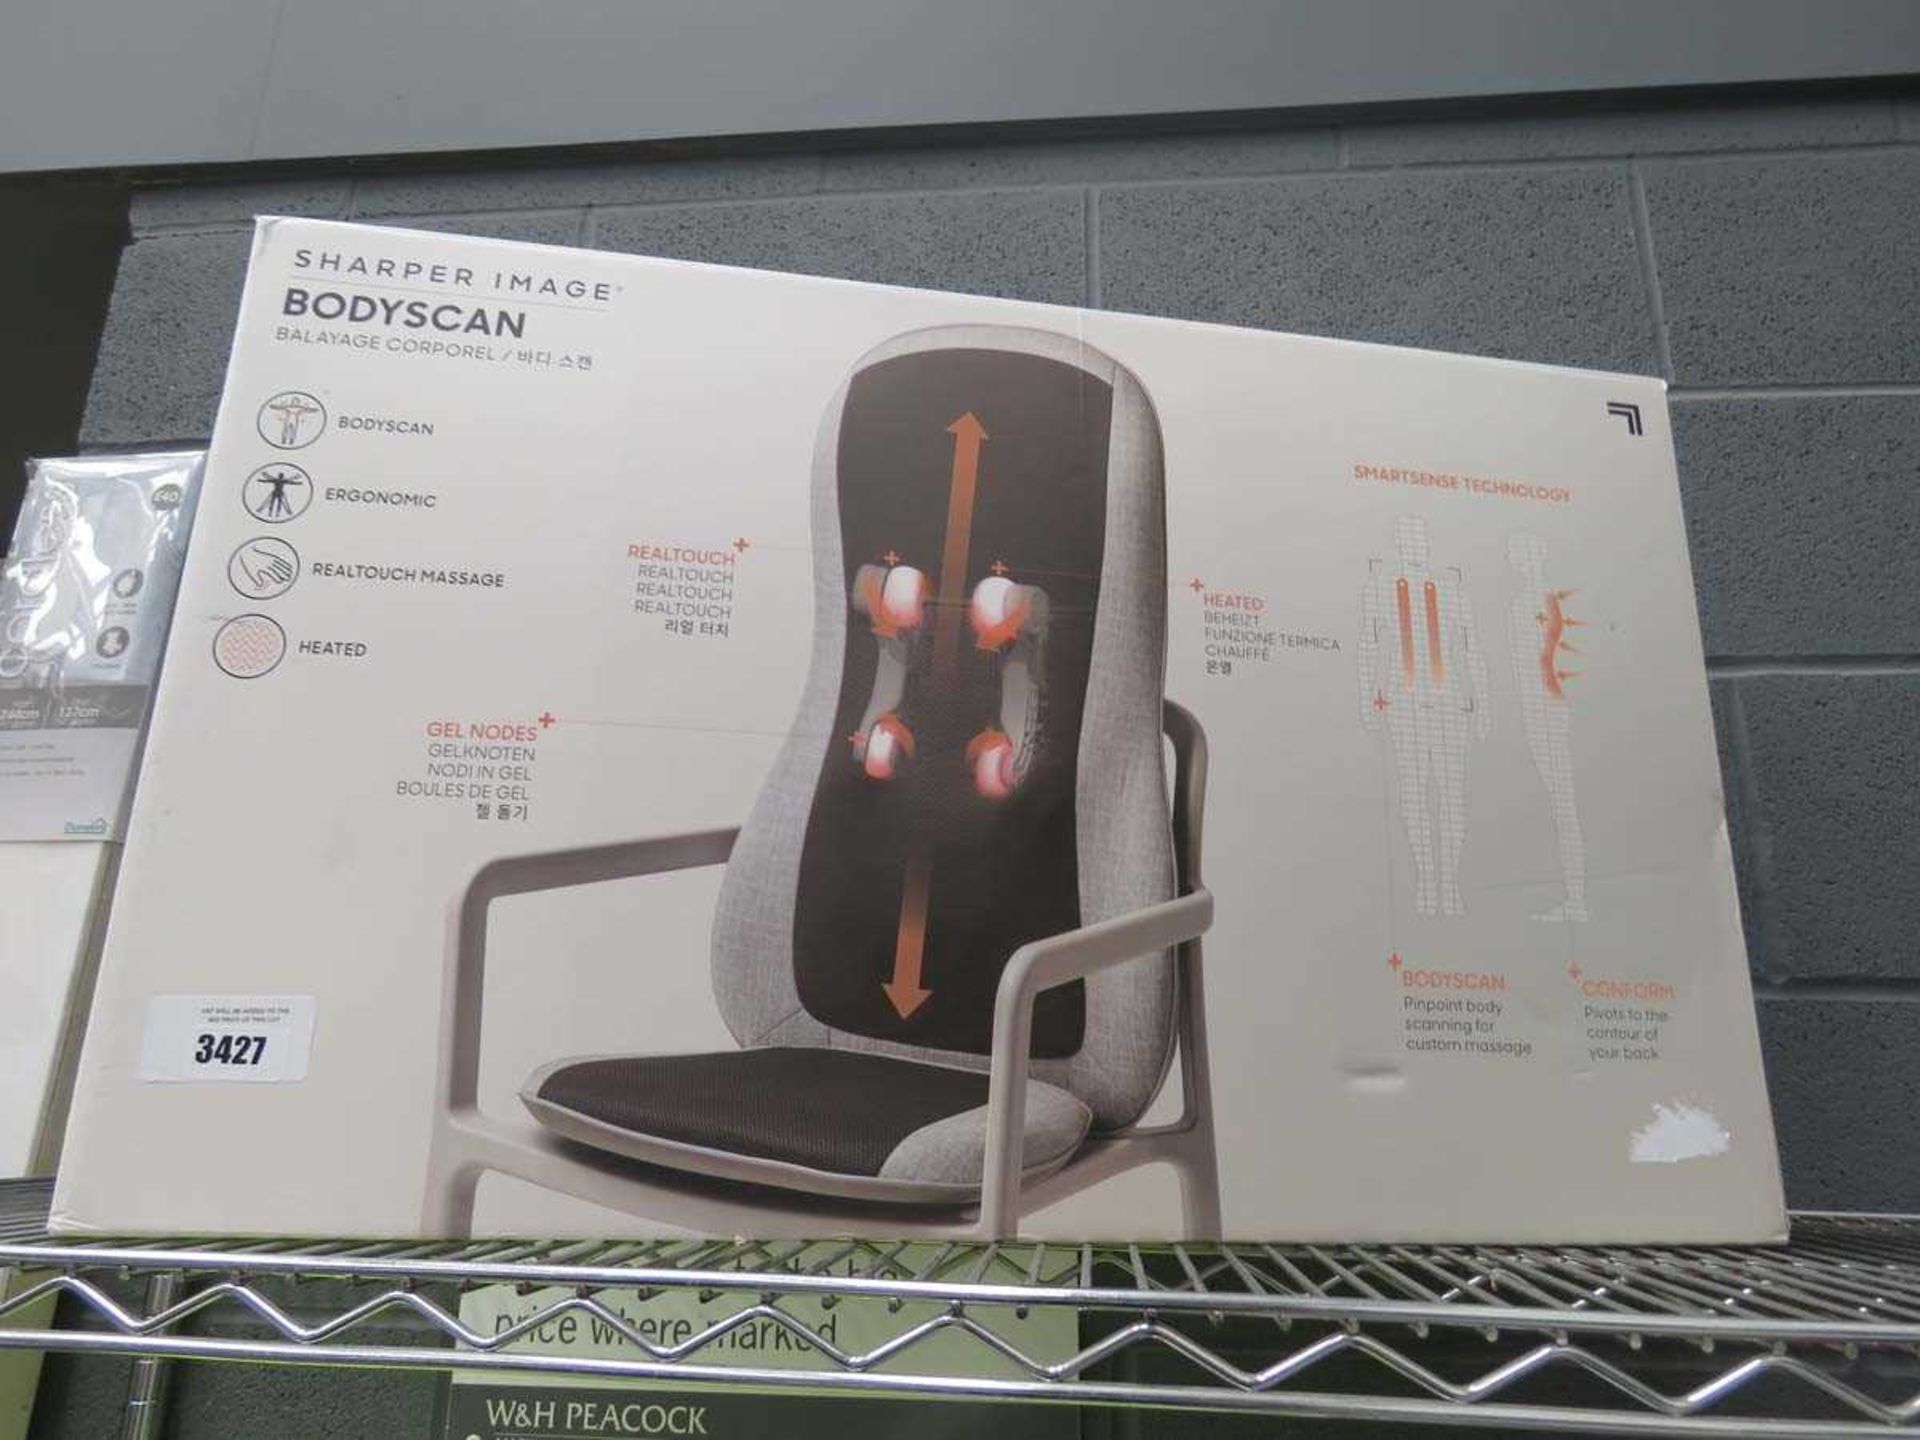 Sharper Image Bodyscan massage chair